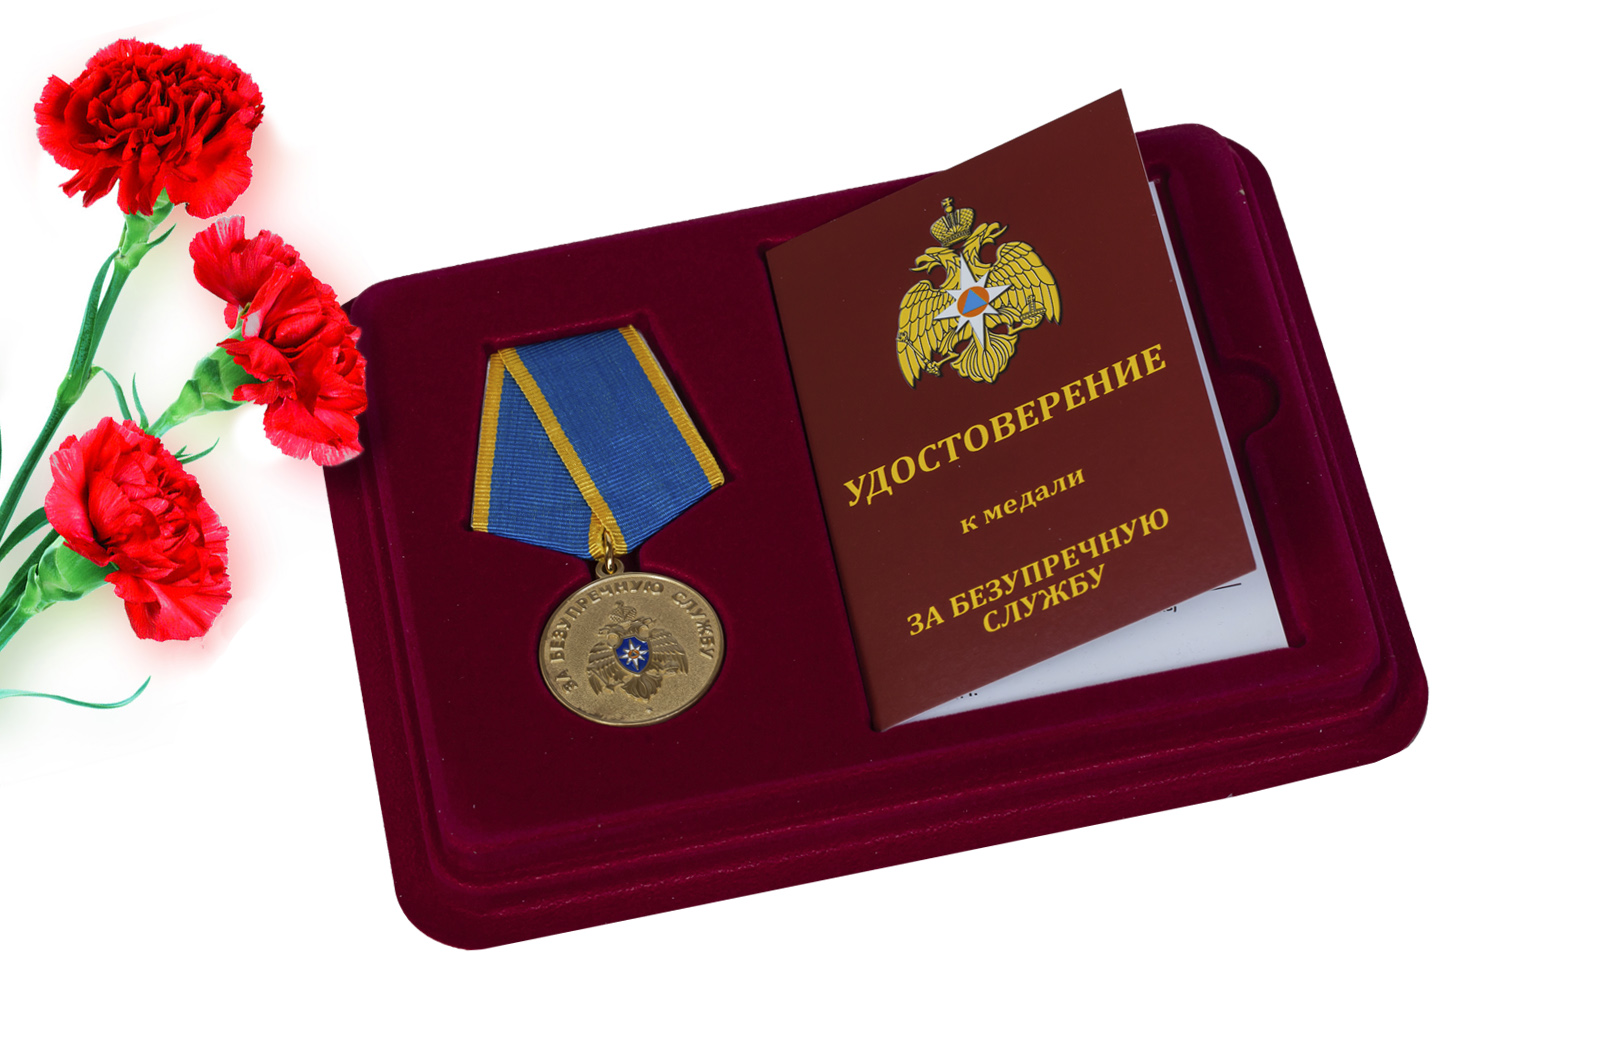 Купить медаль МЧС За безупречную службу в подарок мужчине